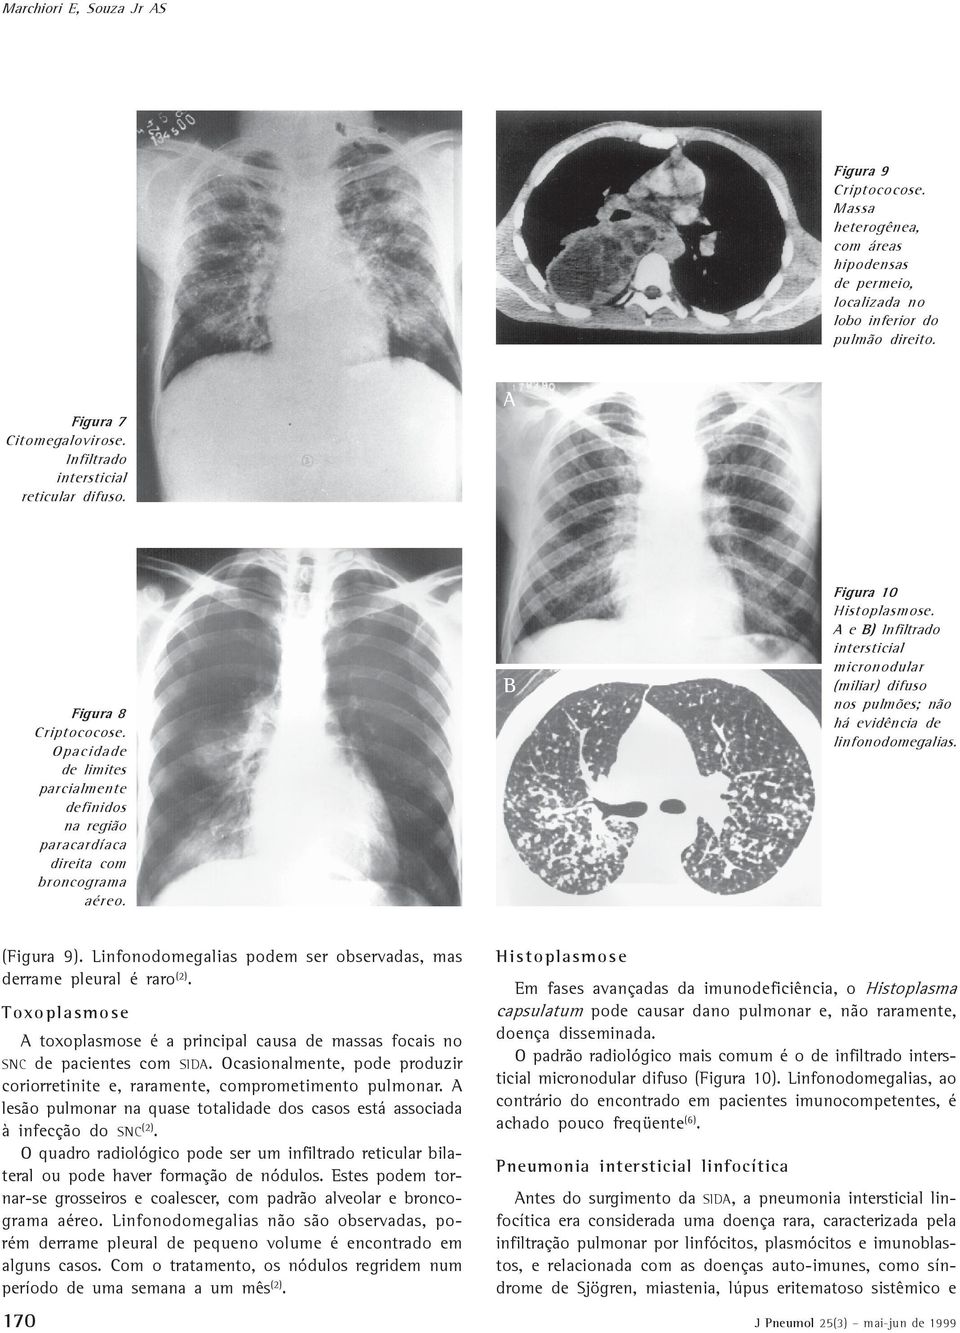 e ) Infiltrado intersticial micronodular (miliar) difuso nos pulmões; não há evidência de linfonodomegalias. (Figura 9). Linfonodomegalias podem ser observadas, mas derrame pleural é raro (2).